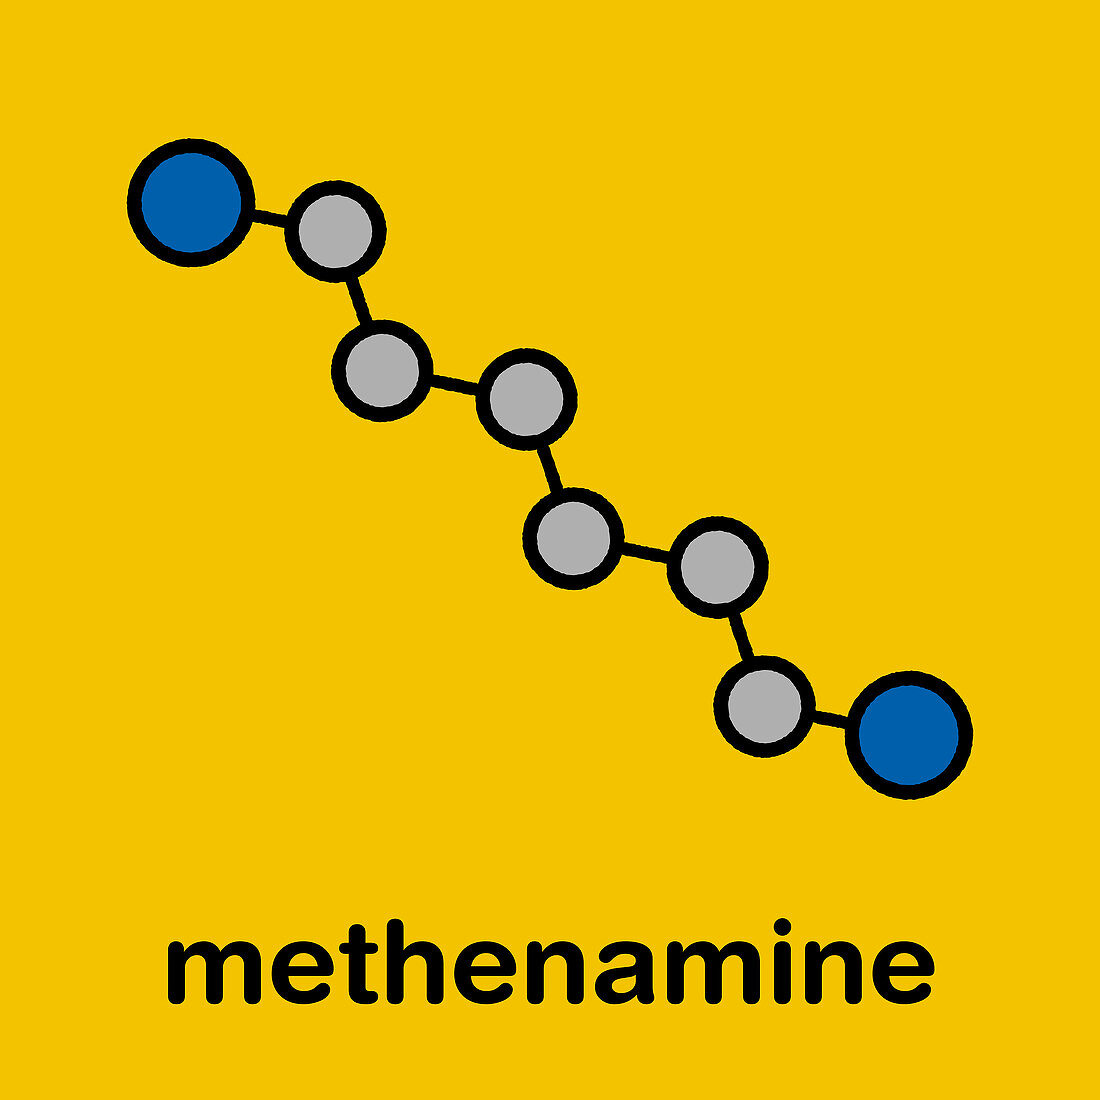 Methenamine molecule, illustration